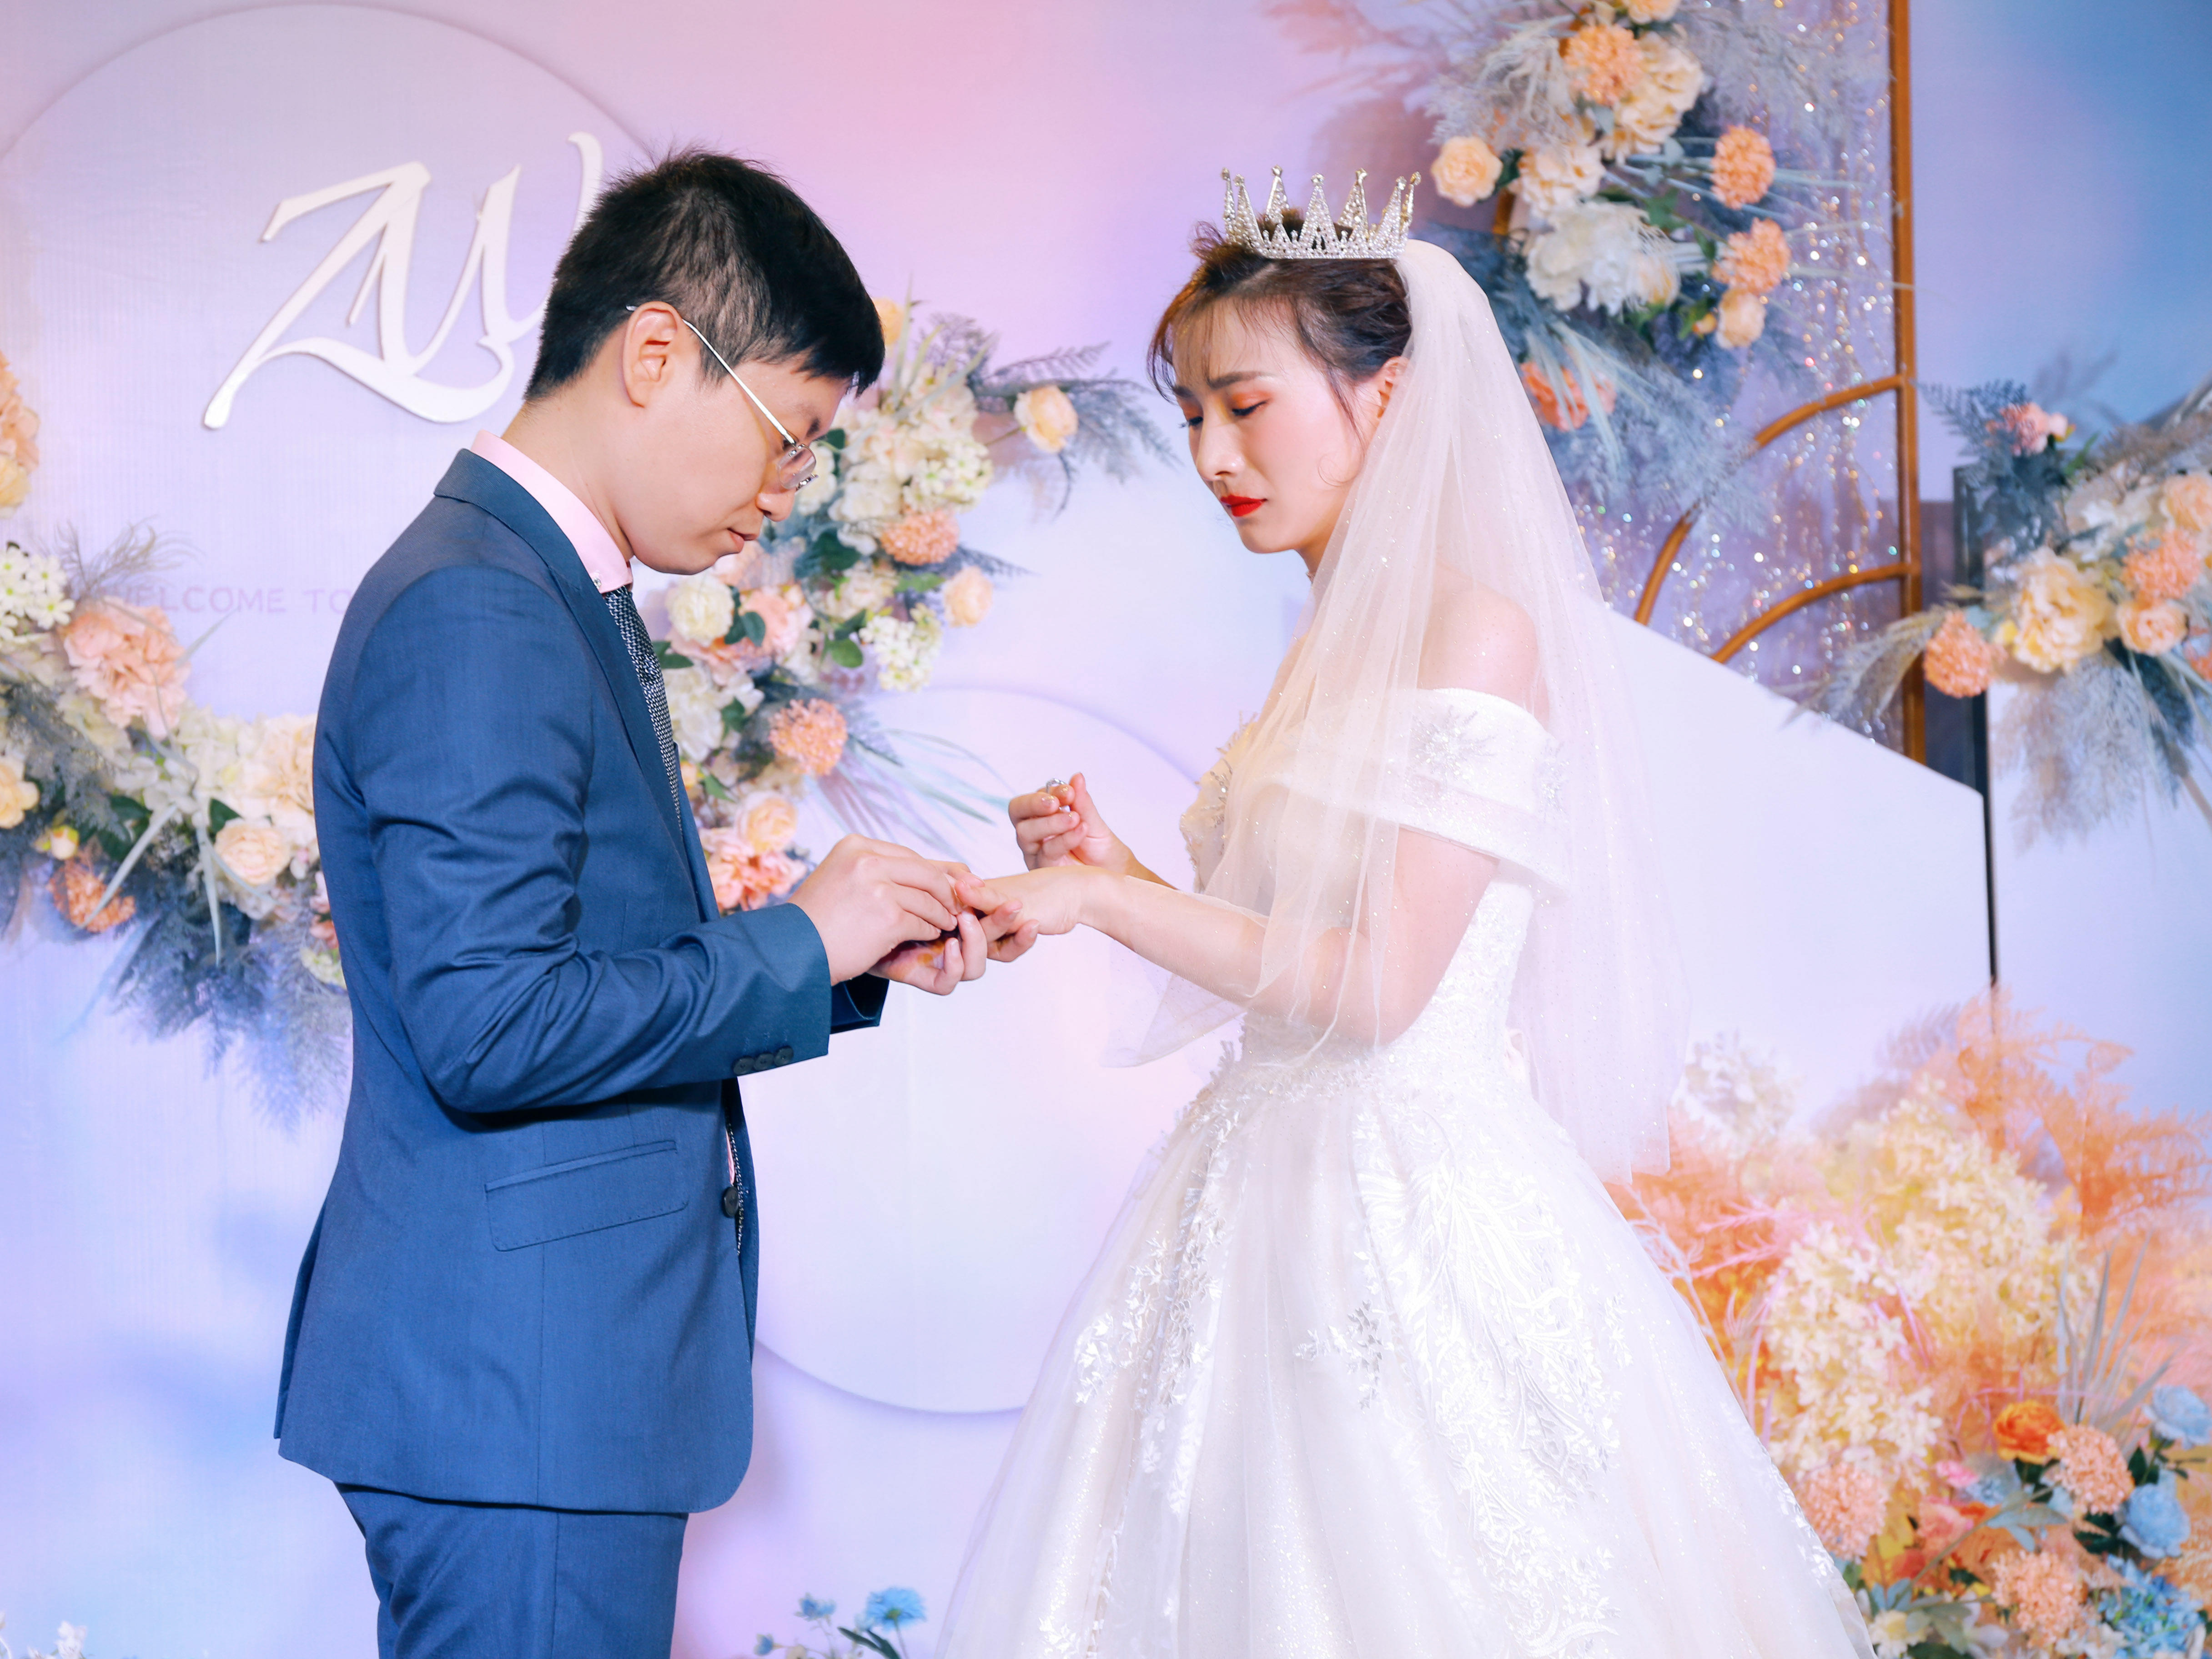 【大禧婚礼】粉蓝色系梦幻婚礼--《觅憶》